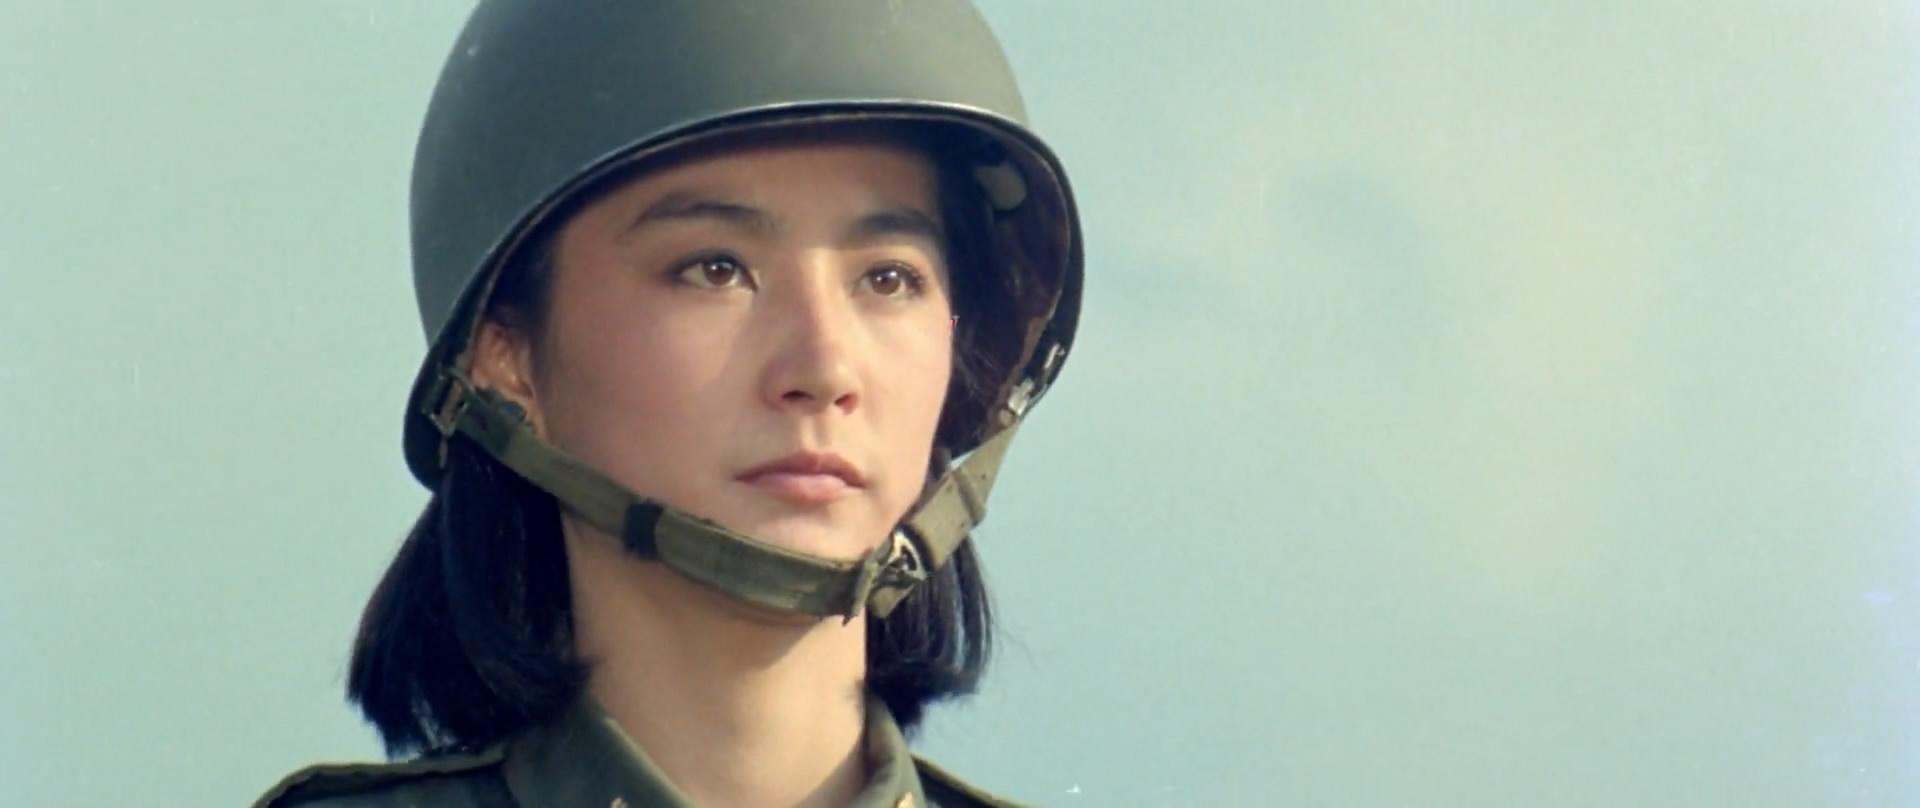 原创:林青霞版《中国女兵》,中国军事电影不可逾越的颜值巅峰